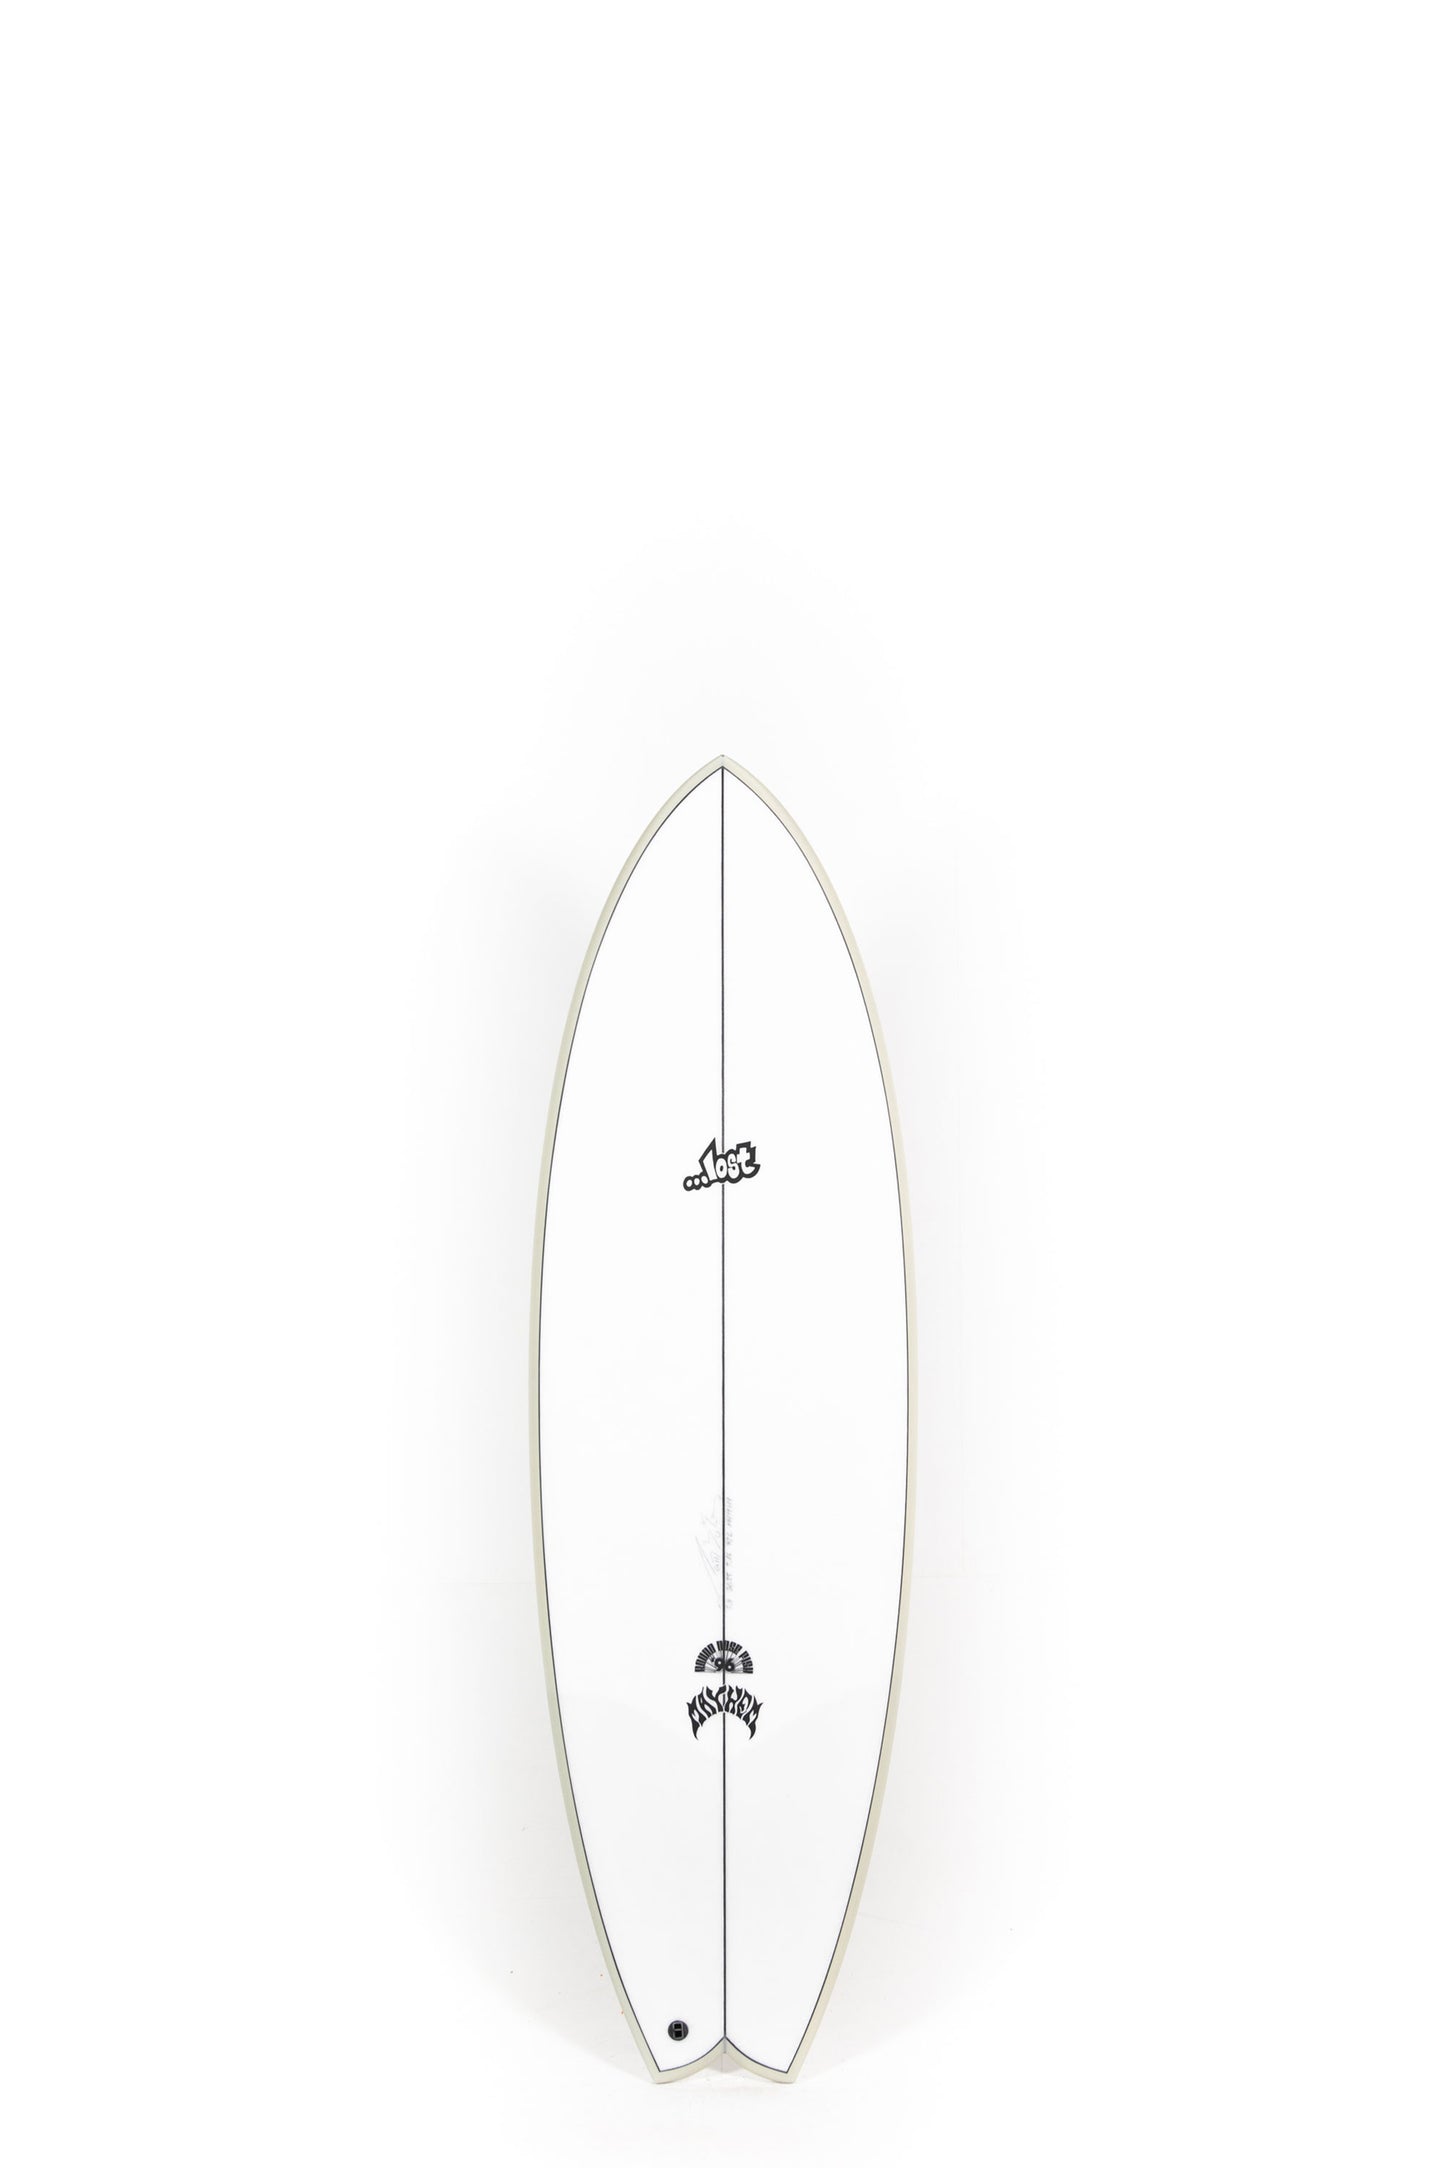 Pukas Surf Shop - Lost Surfboard - RNF '96 by Matt Biolos - 5'8"x 20.25" x 2.46 - 32L - MH19149